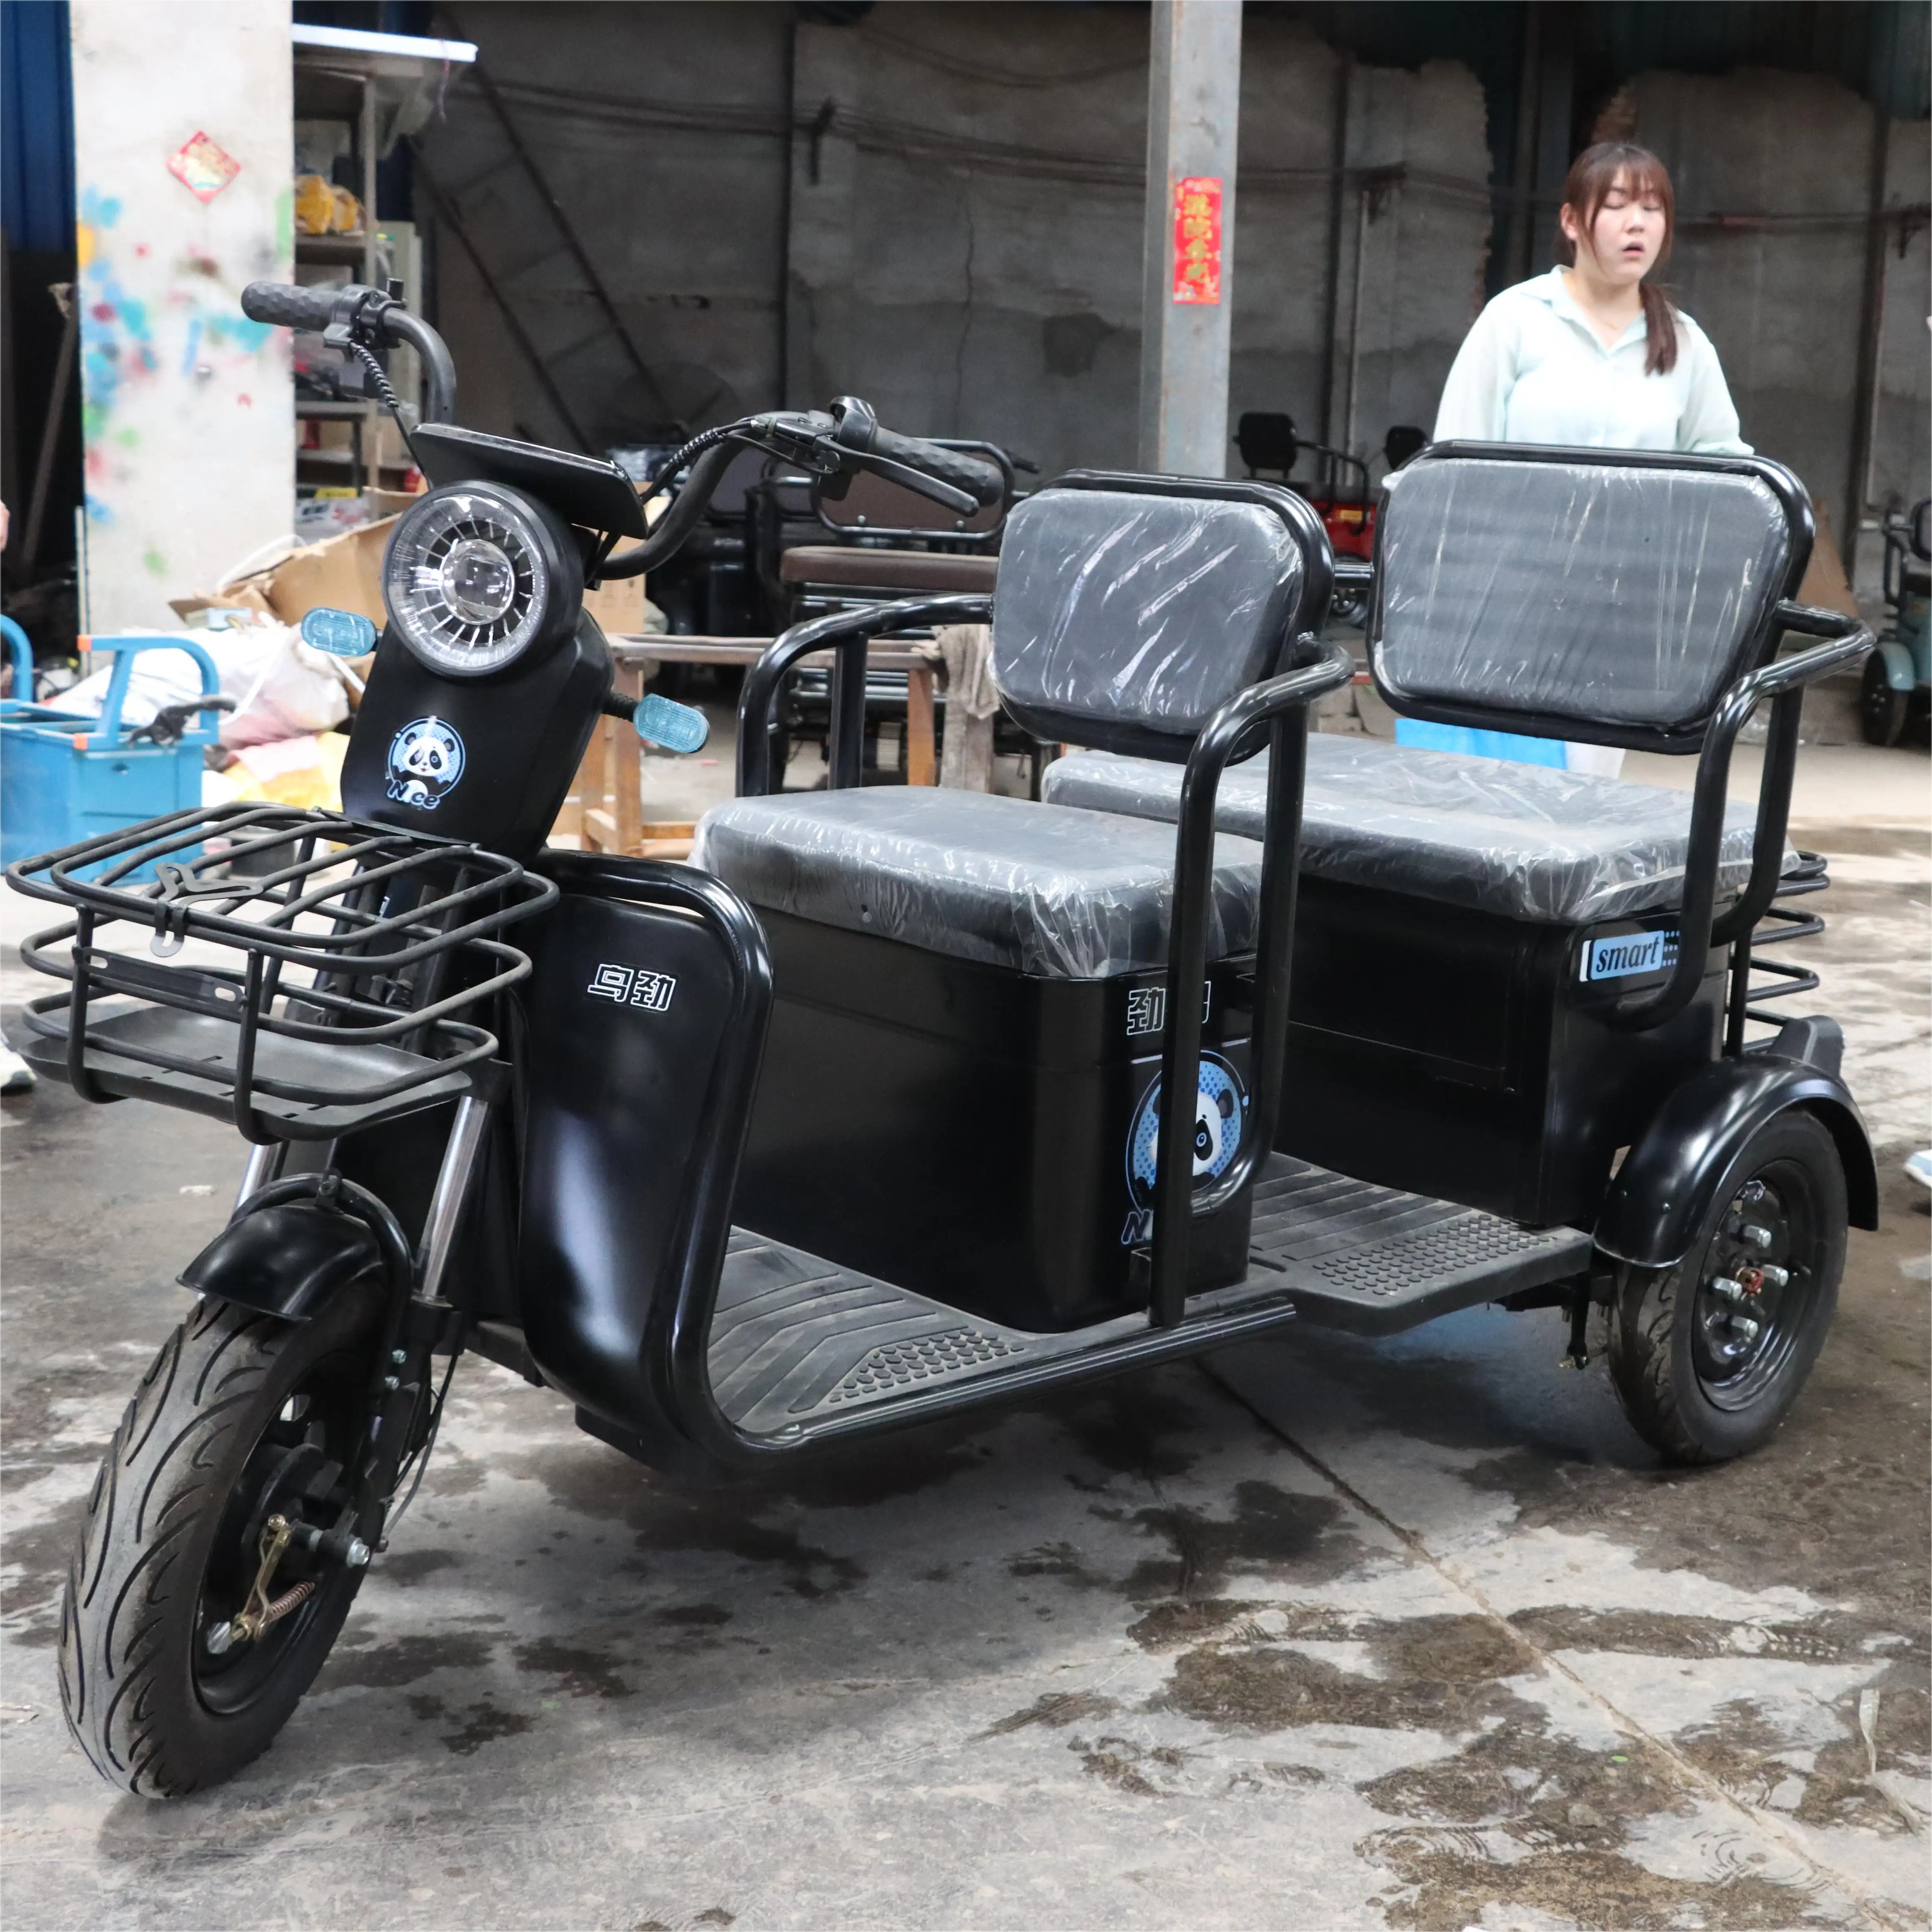 دراجة كهربائية ثلاثية العجلات للاستخدام المزدوج في المنزل سيارة صغيرة صغيرة على البطارية لنقل المراهقين ذوي الاحتياجات الخاصة مزدوجة